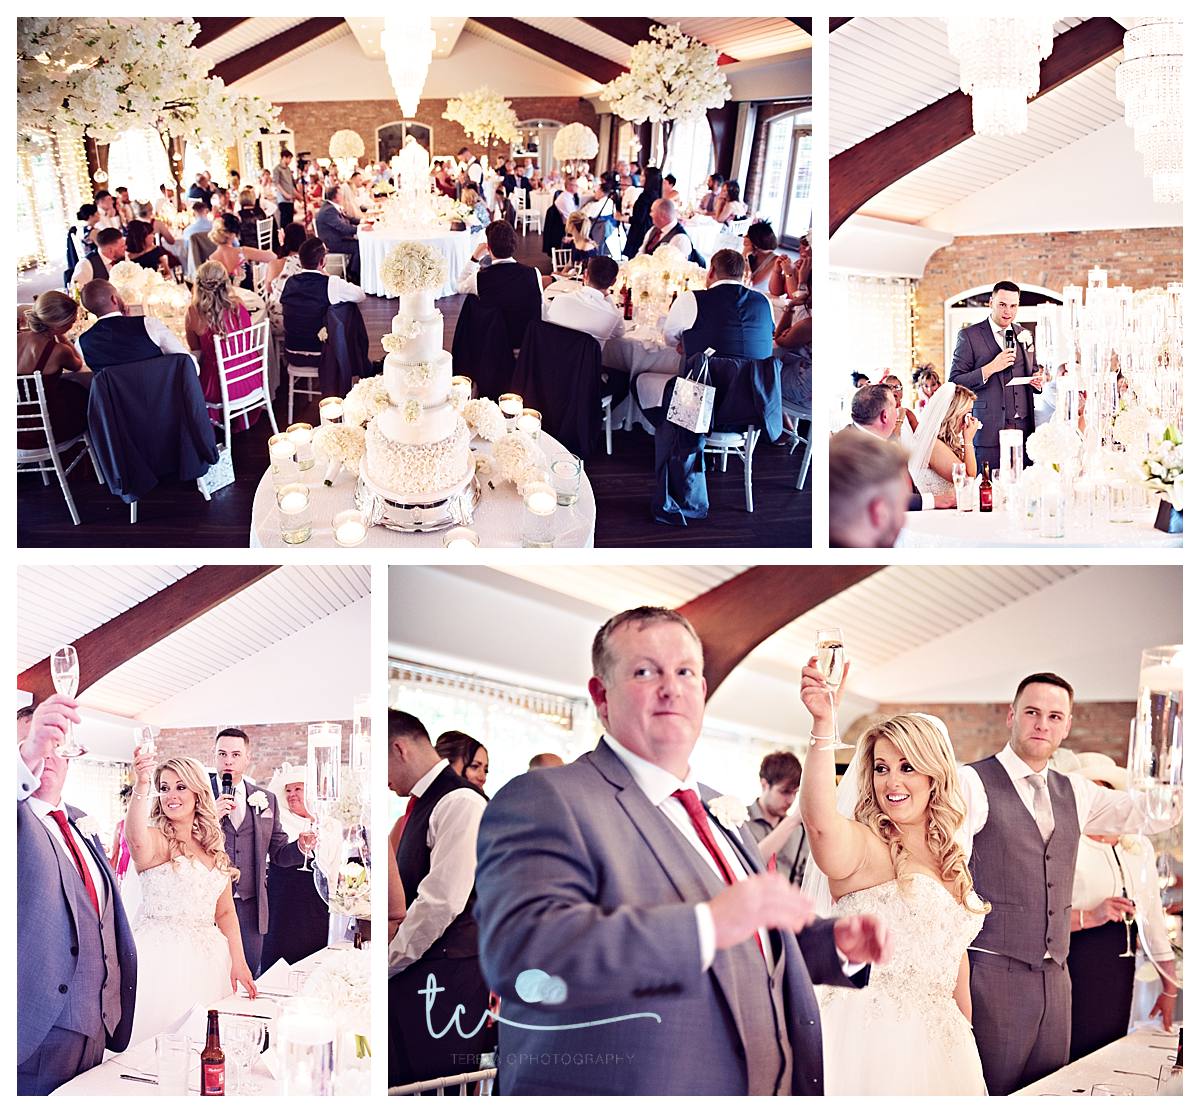 Colshaw Hall Wedding Photography- Wedding Photography Colshaw Hall- Cheshire Wedding Photography- Wedding Photography Cheshire- Cheshire Weddings- Colshaw Hall Photographer